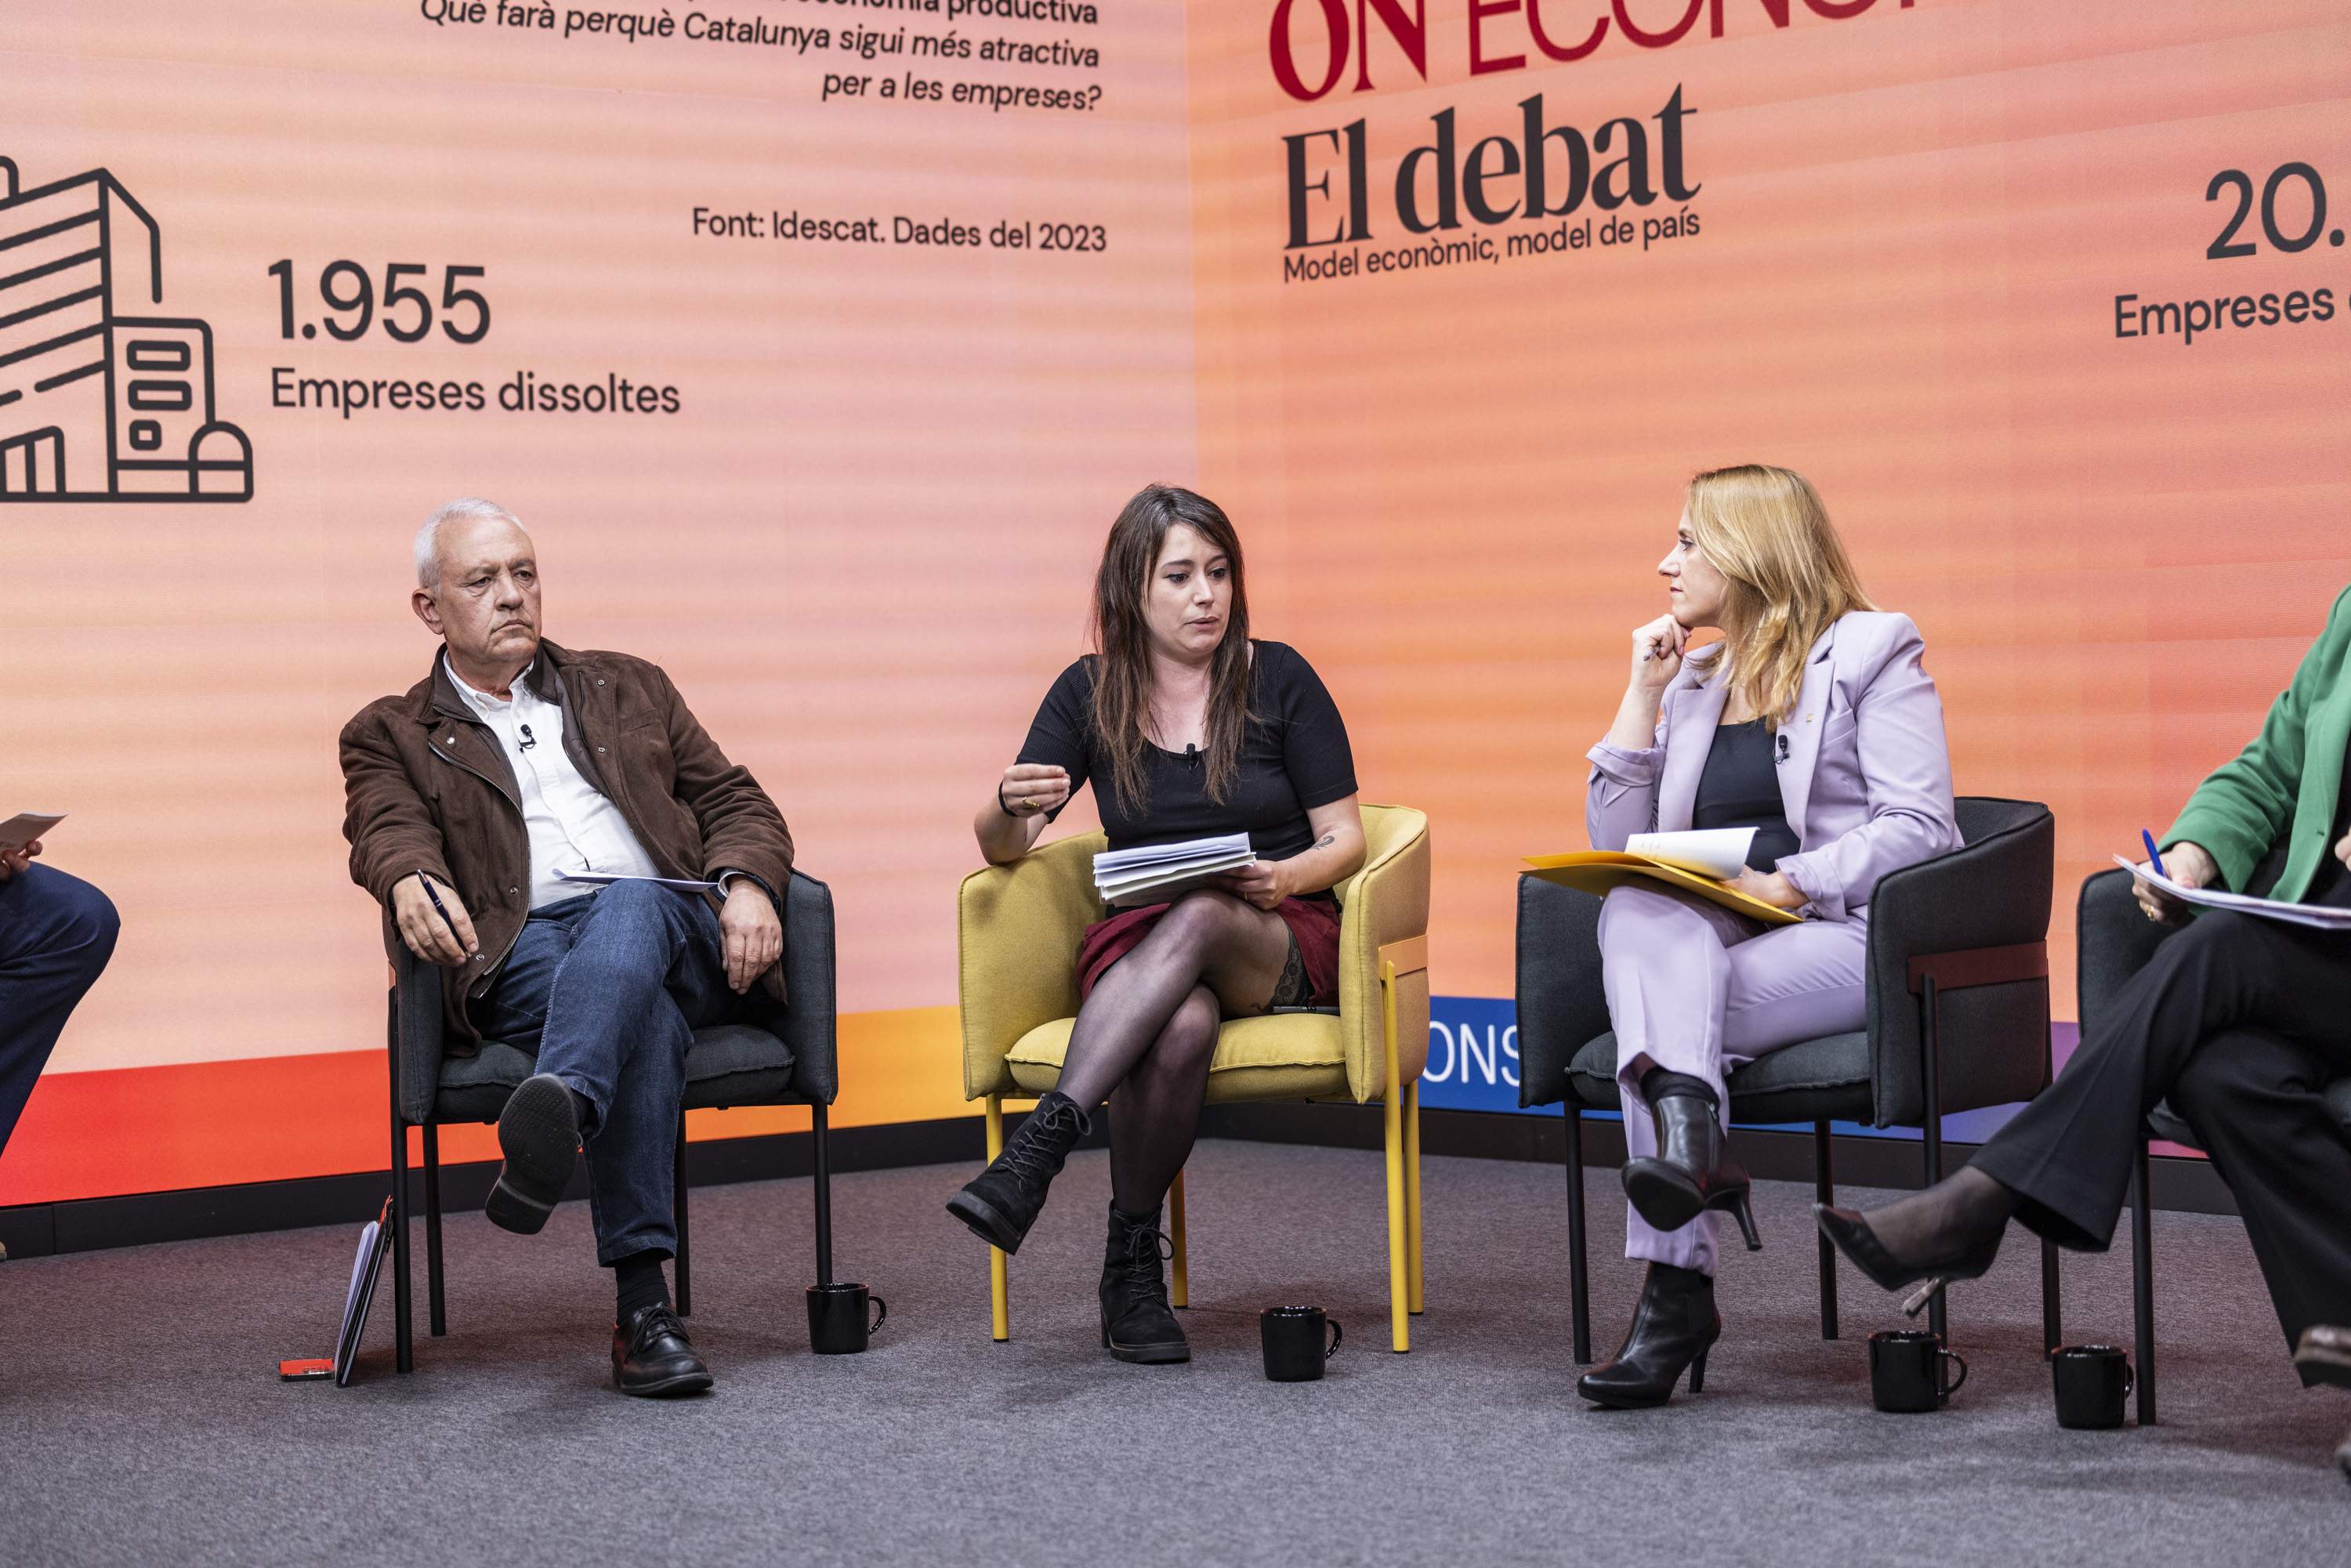 Santi Rodríguez (PP), Laure Vega (CUP) i la consellera Natàlia Mas (ERC) en un dels moments del debat d'ON ECONOMIA per a les Eleccions Catalanes